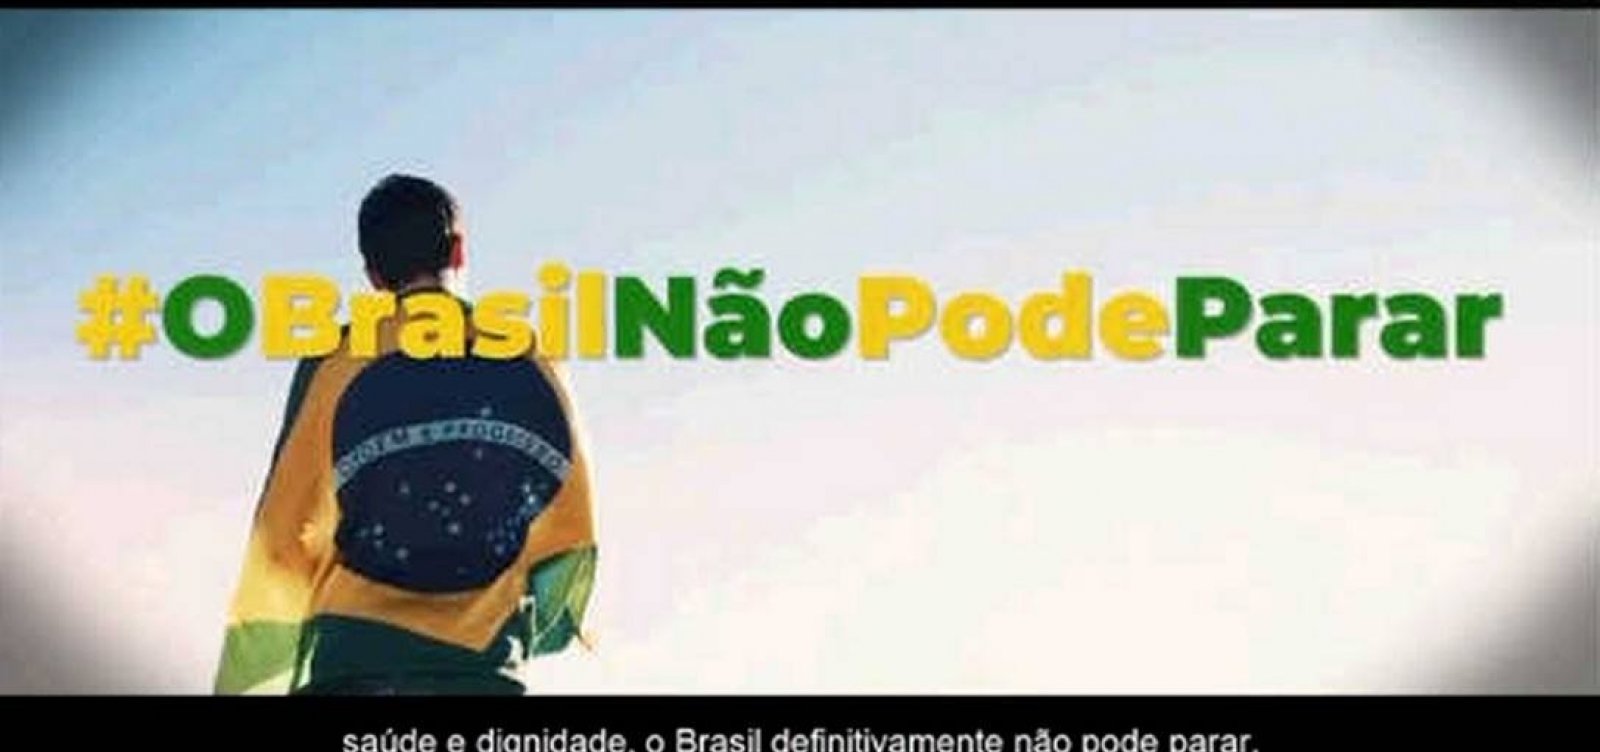 Contratada sem licitação, campanha 'Brasil Não Pode Parar' vai custar R$ 4,8 milhões